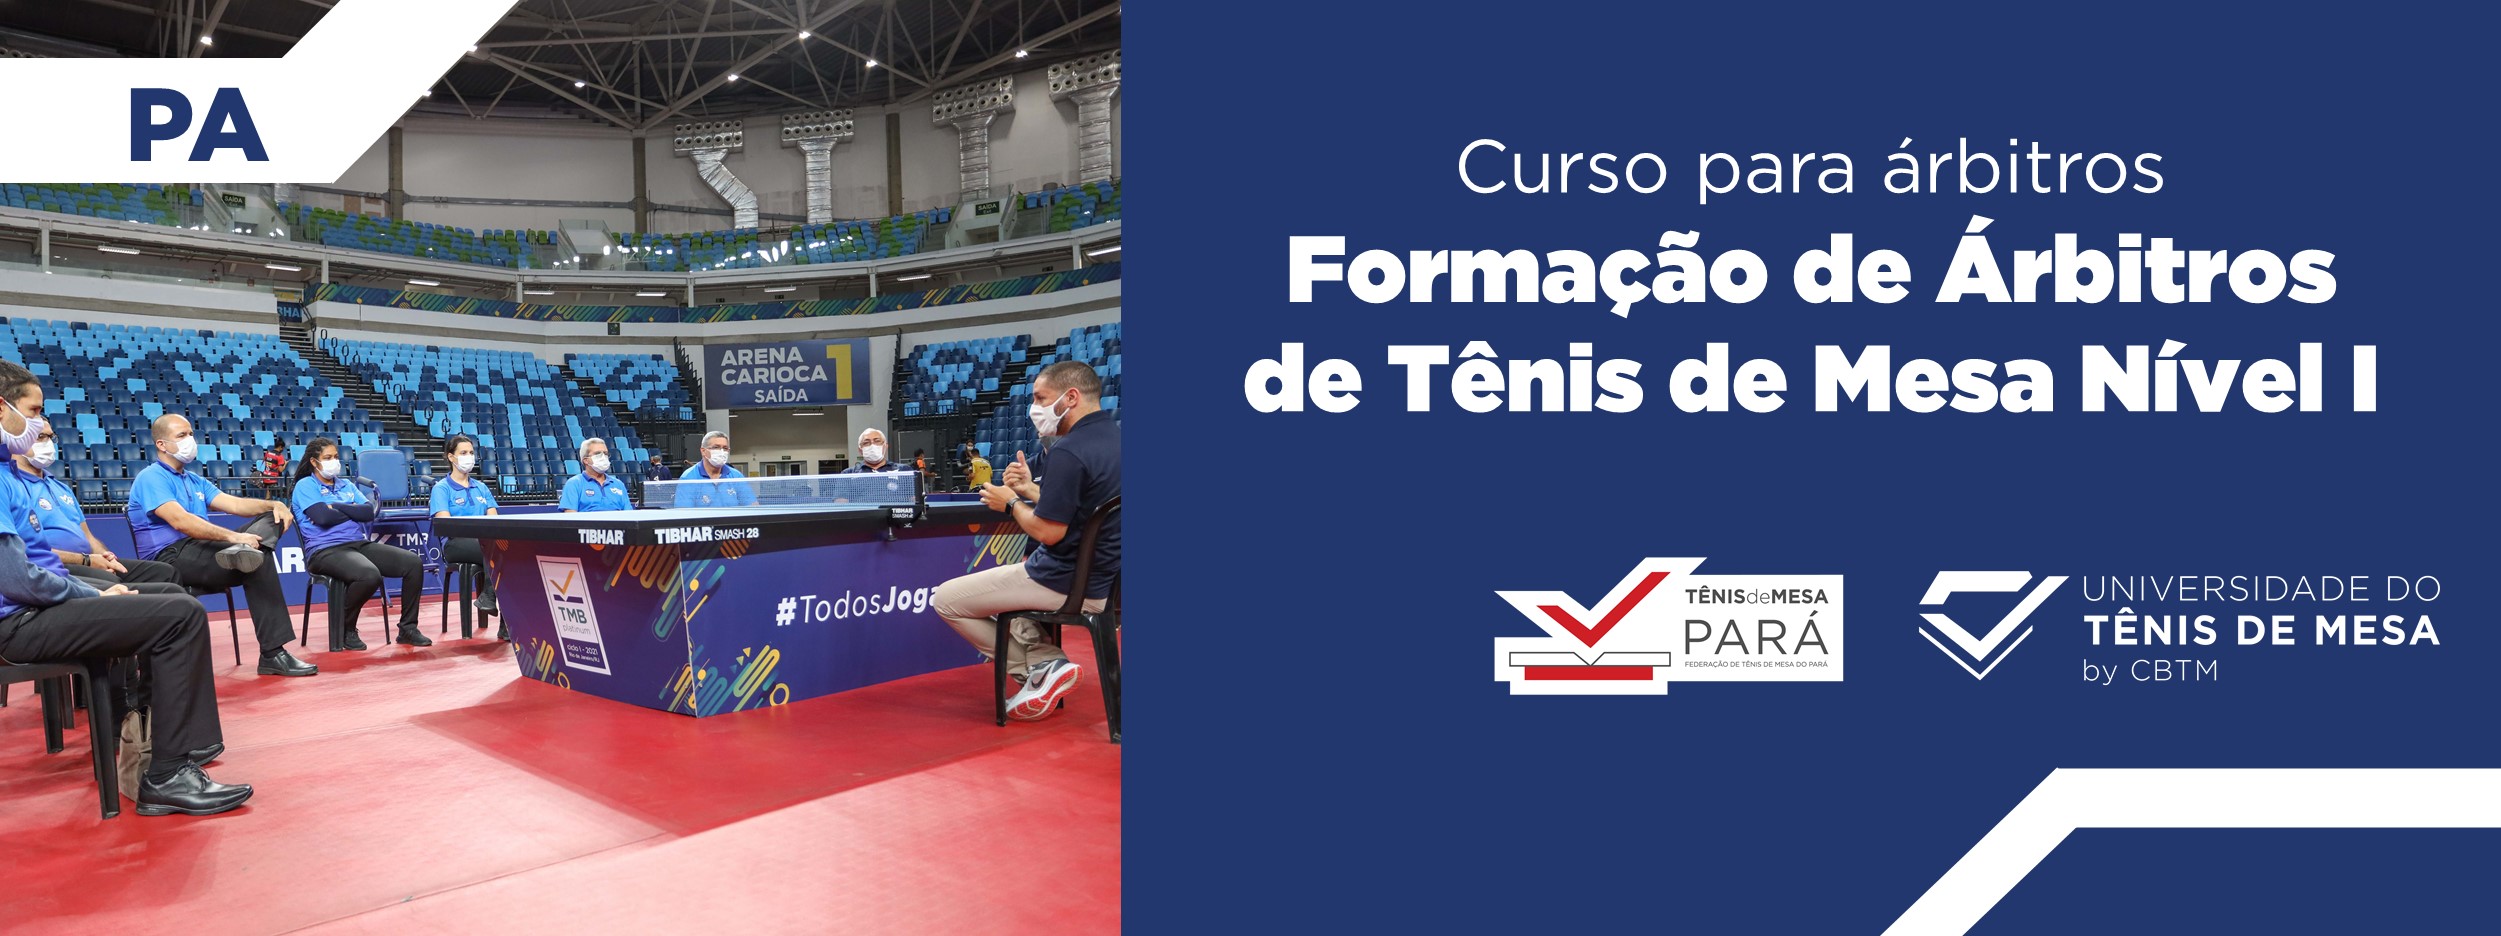 Banner - Formação de Árbitros de Tênis de Mesa  Nível I – Estadual - Federação de Tênis de Mesa do Pará